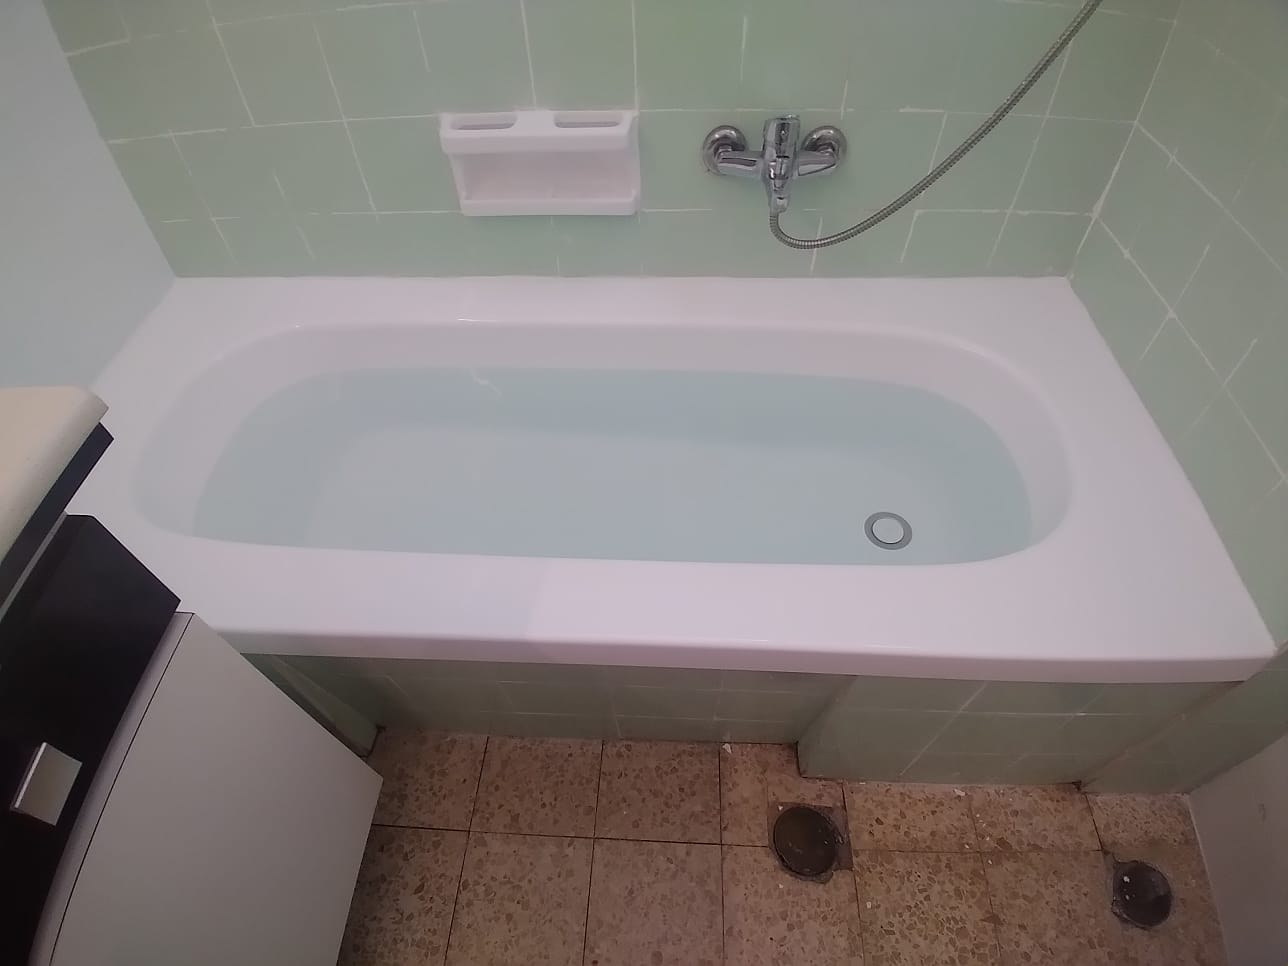 הלבשת אמבטיה אקרילית - פתרון אולטימטיבי לאמבטיה